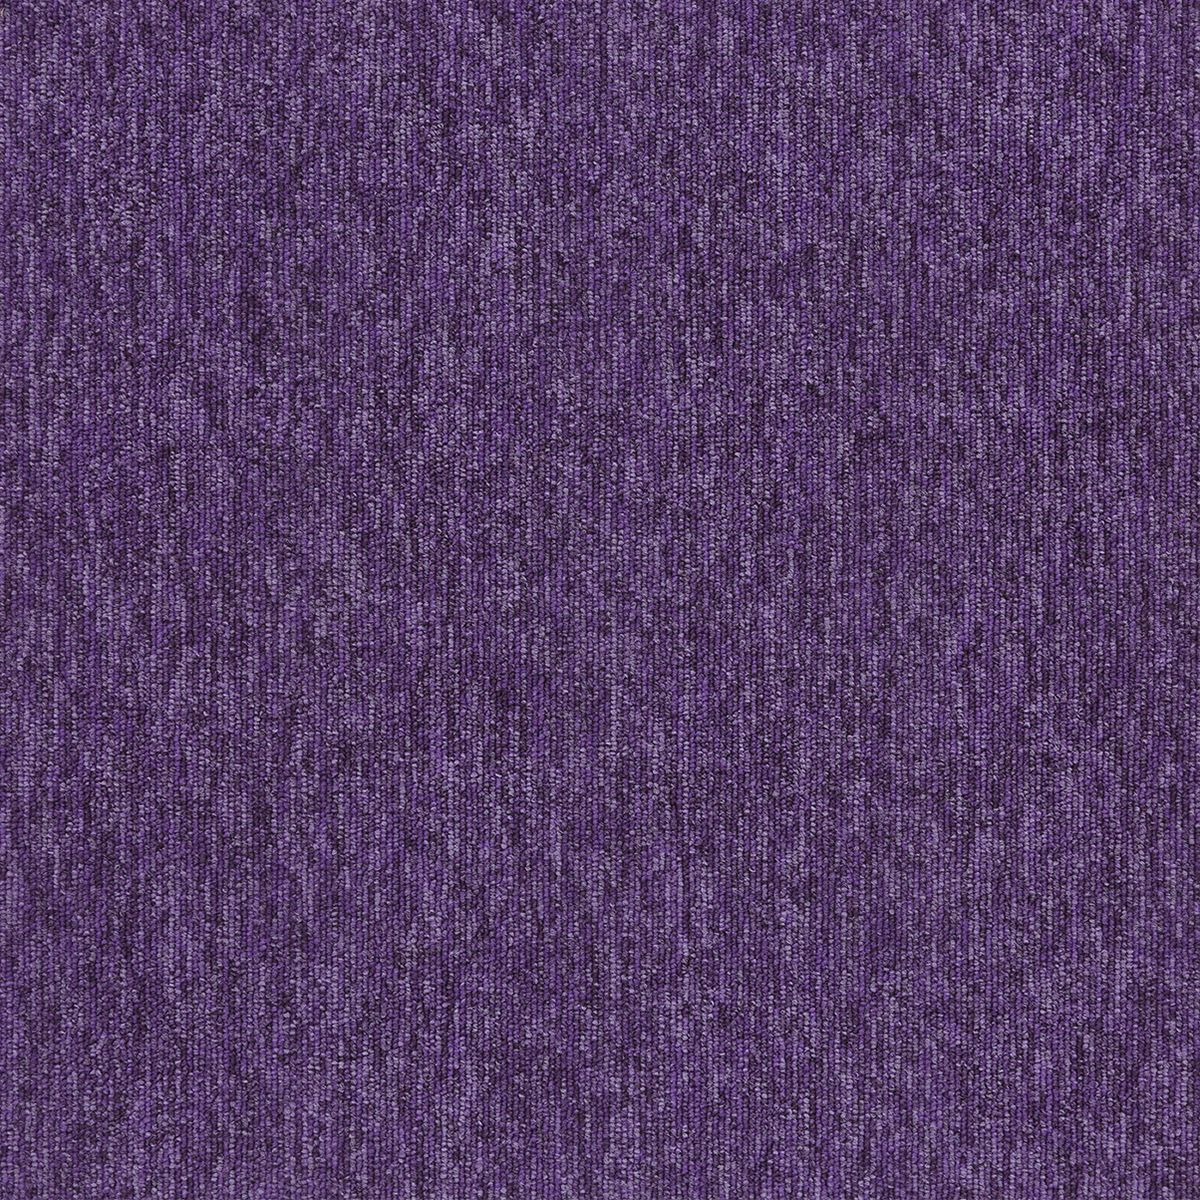 20269 purple sky